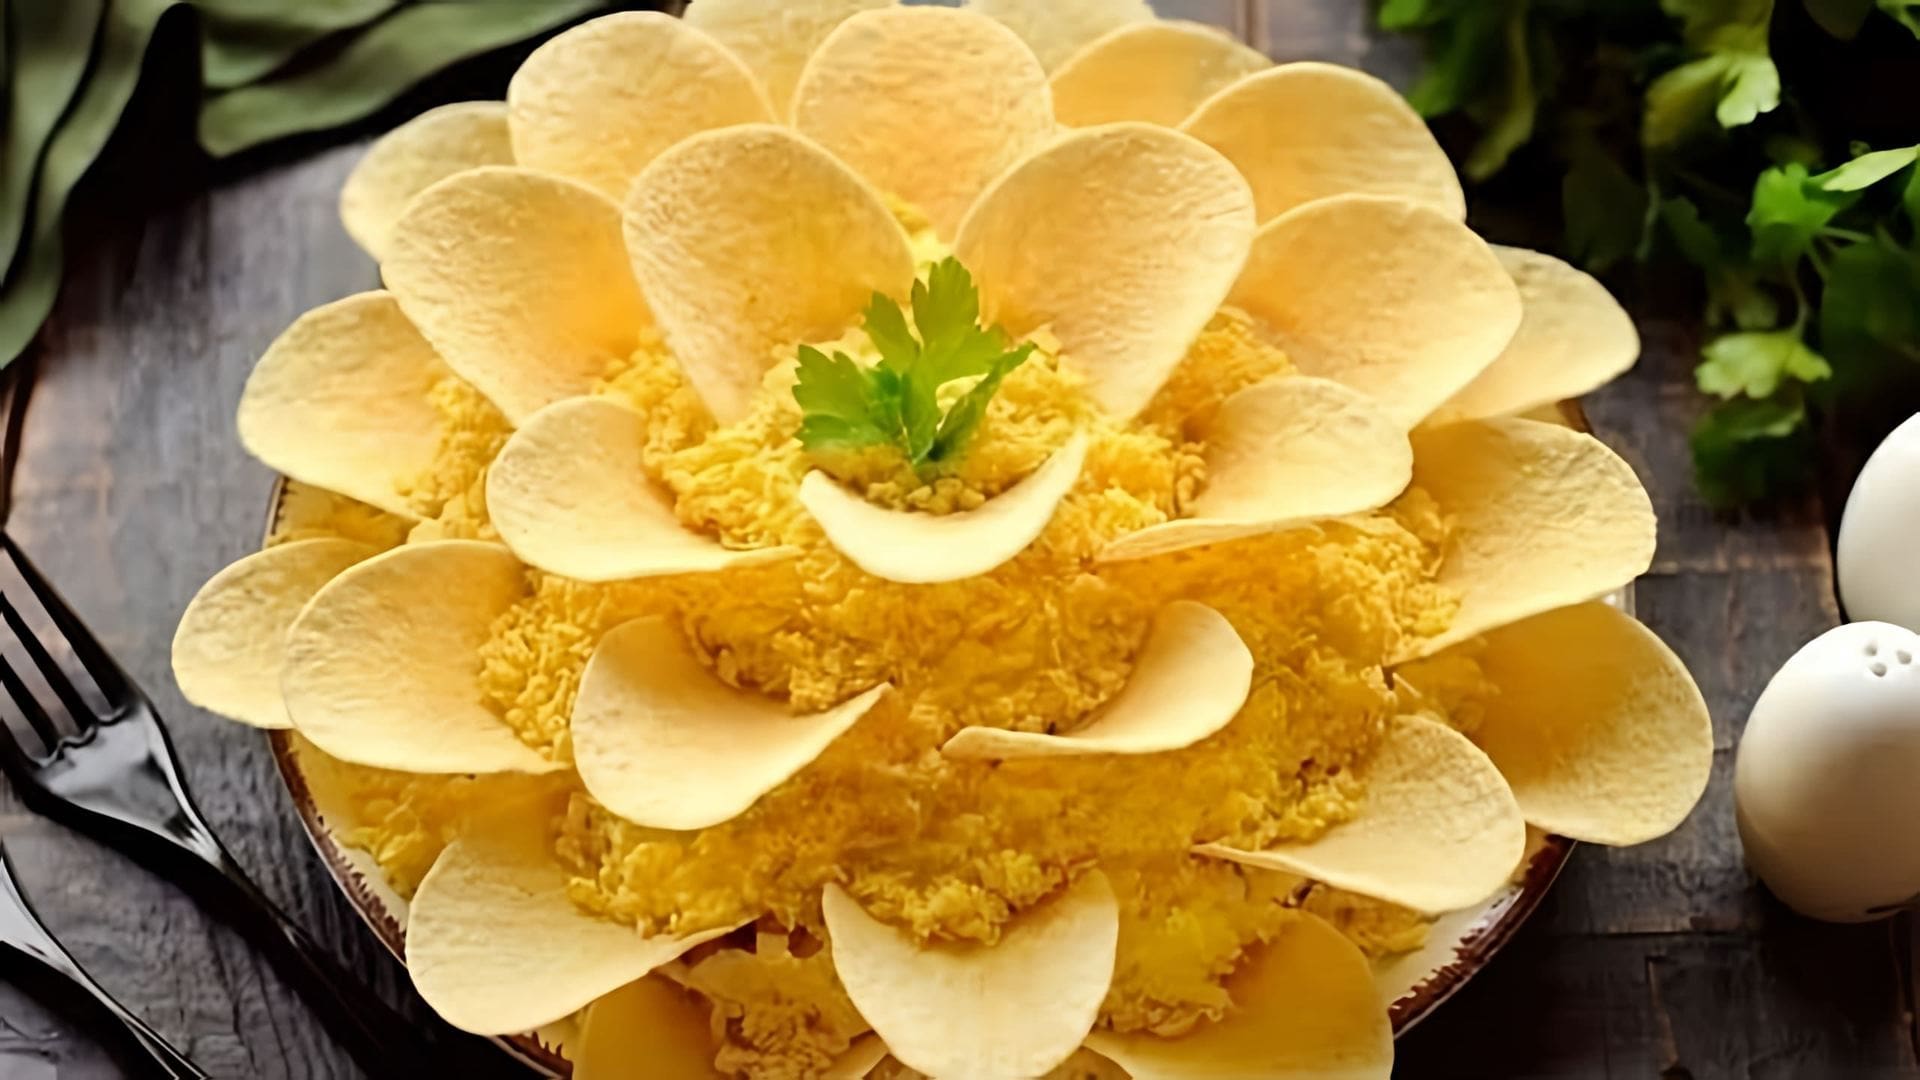 Салат "Хризантема" - это вкусное и оригинальное блюдо, которое станет украшением любого праздничного стола